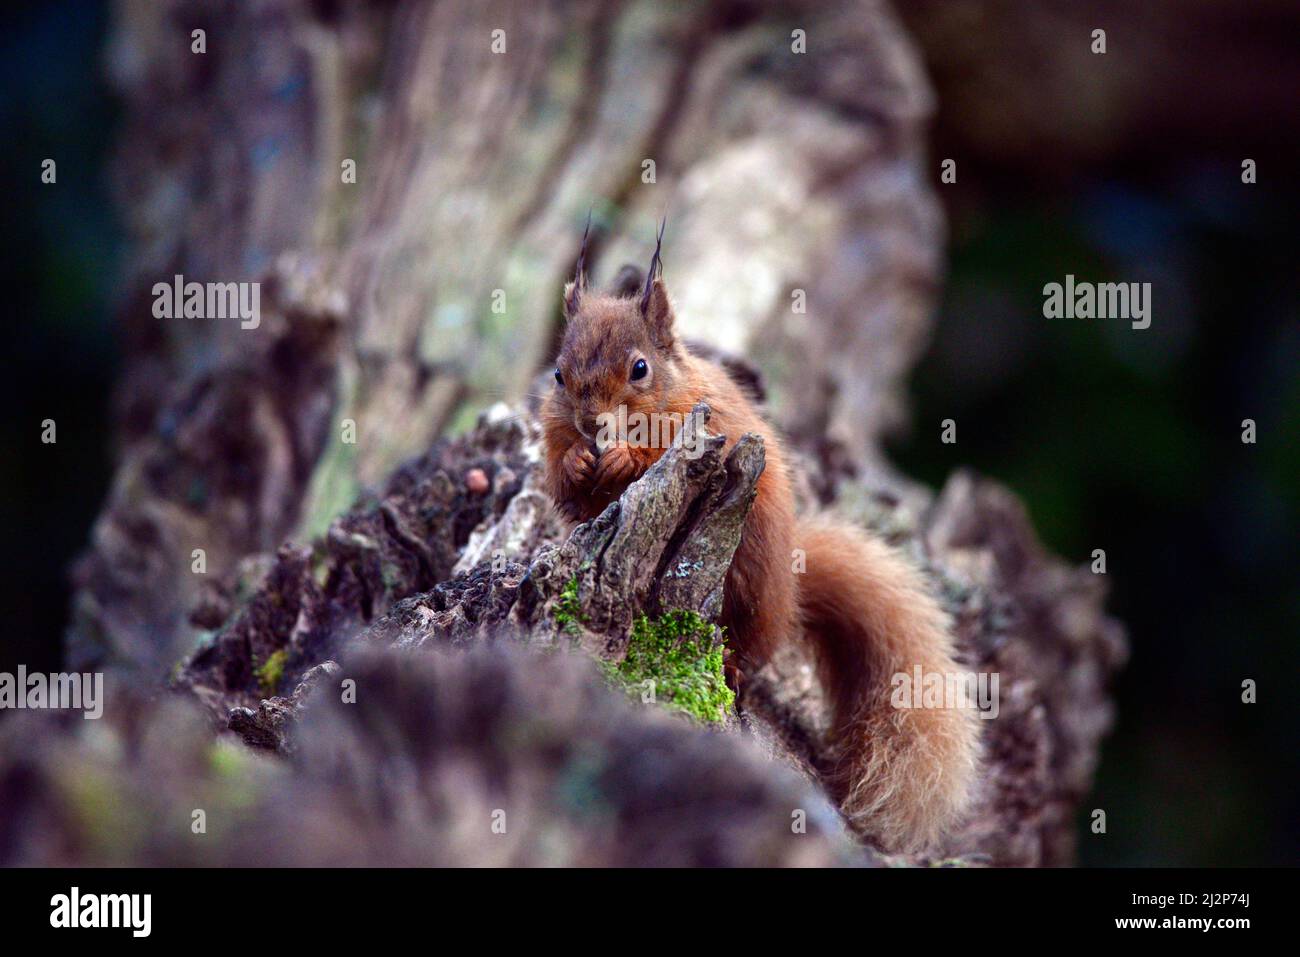 Red squirrel or Sciurus Stock Photo